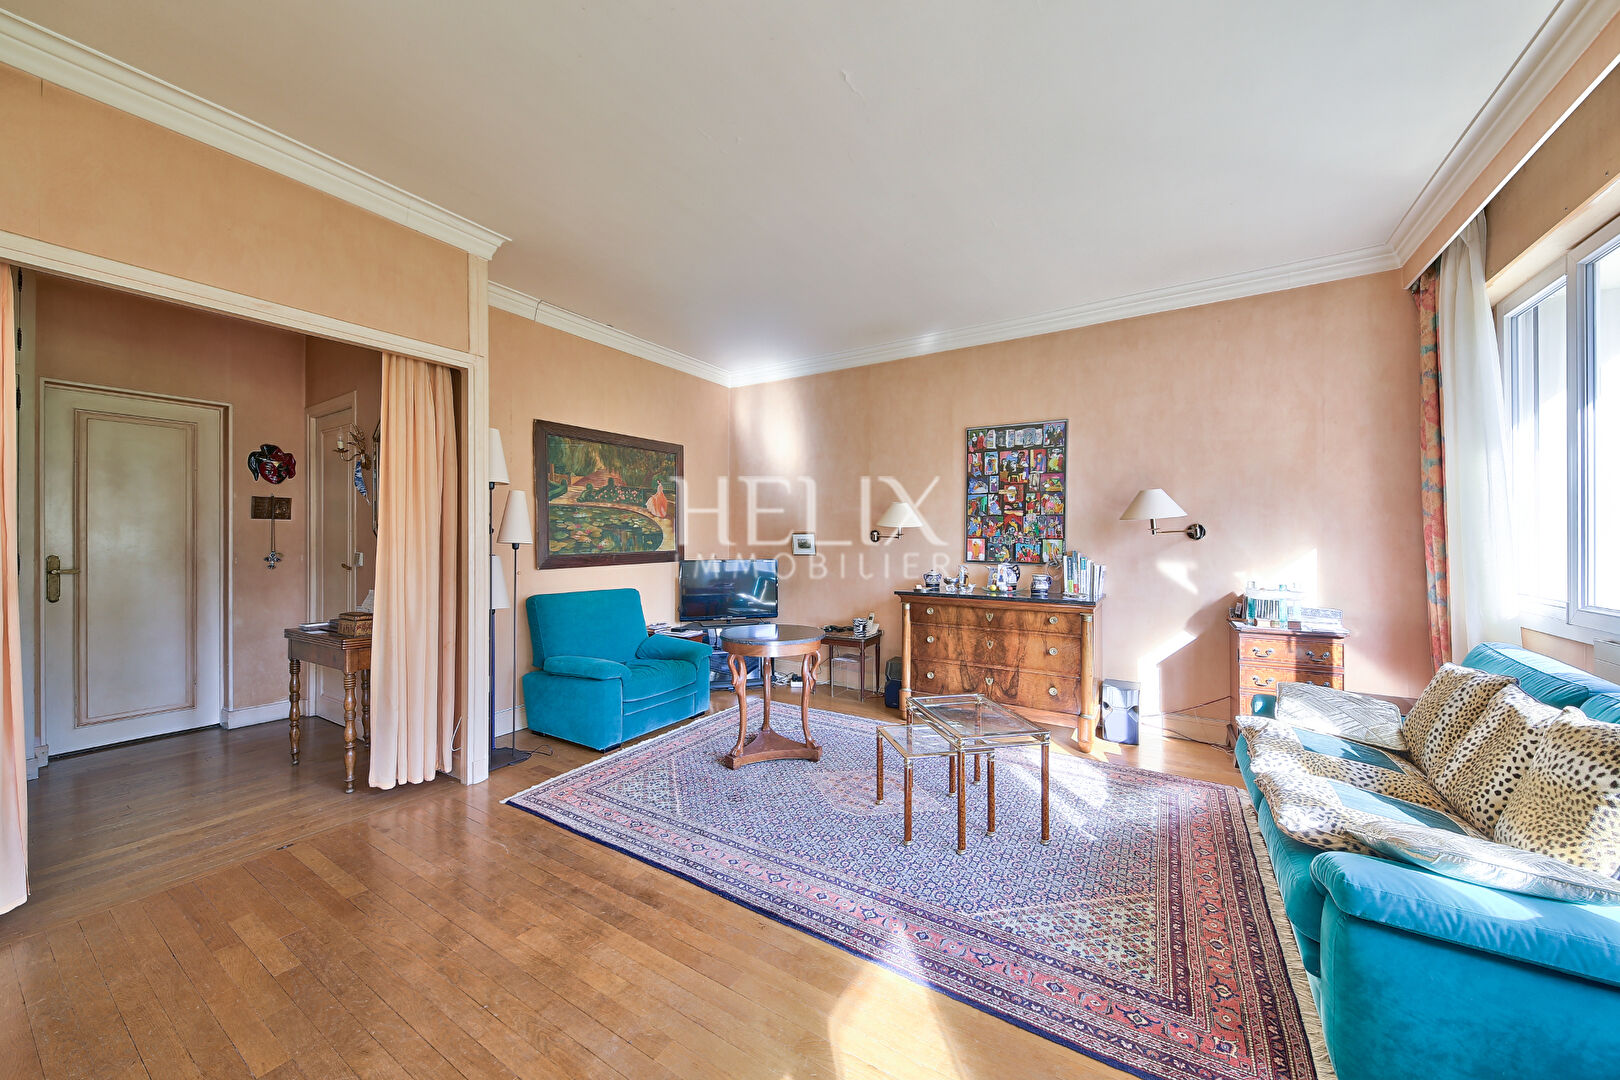 À Vendre en Exclusivité, Appartement 4 pièces, 2 chambres de 82.44 m2. Face au Parc du Château de Saint Germain-en-Laye. RER A situé à 3 min à pieds.